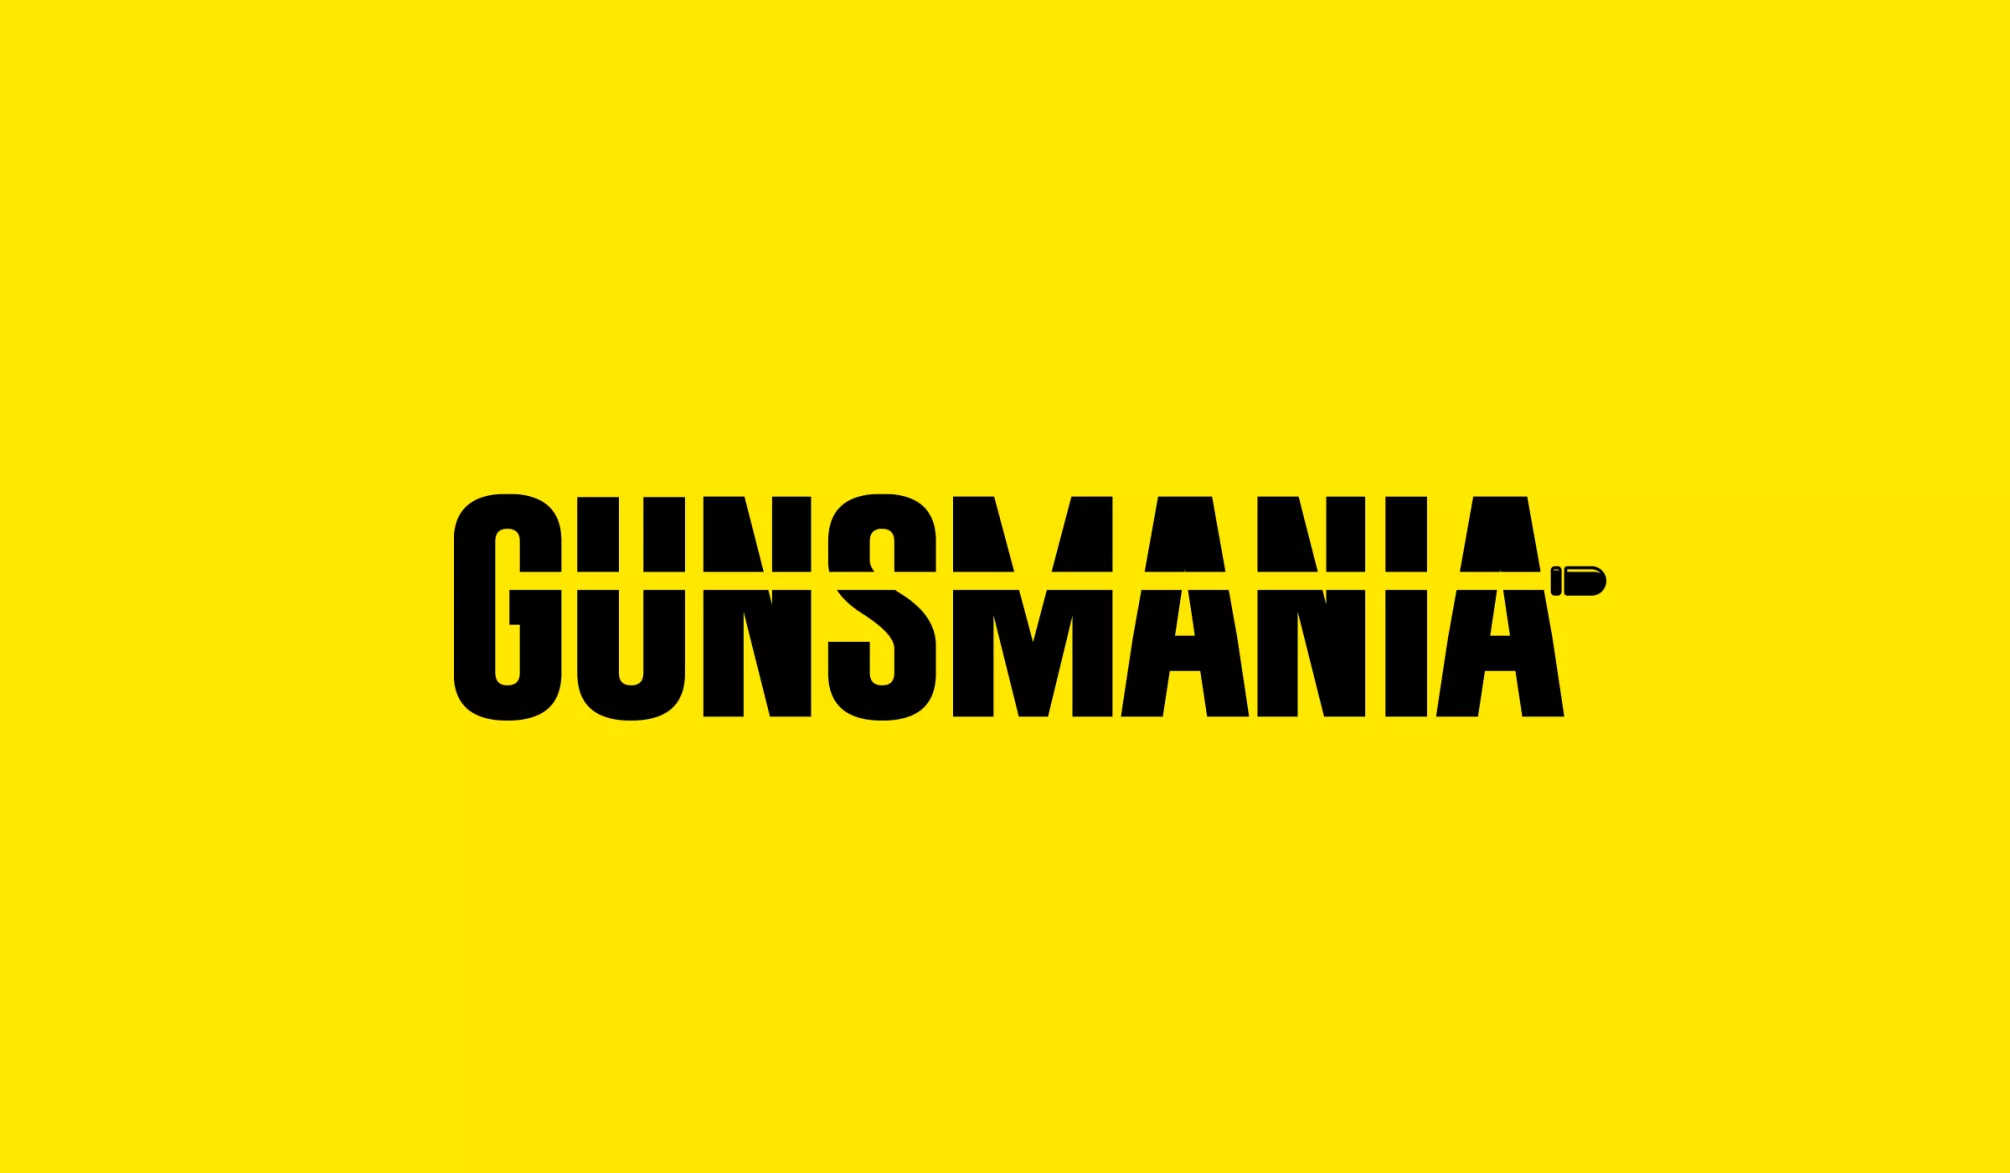 gunsmania.com